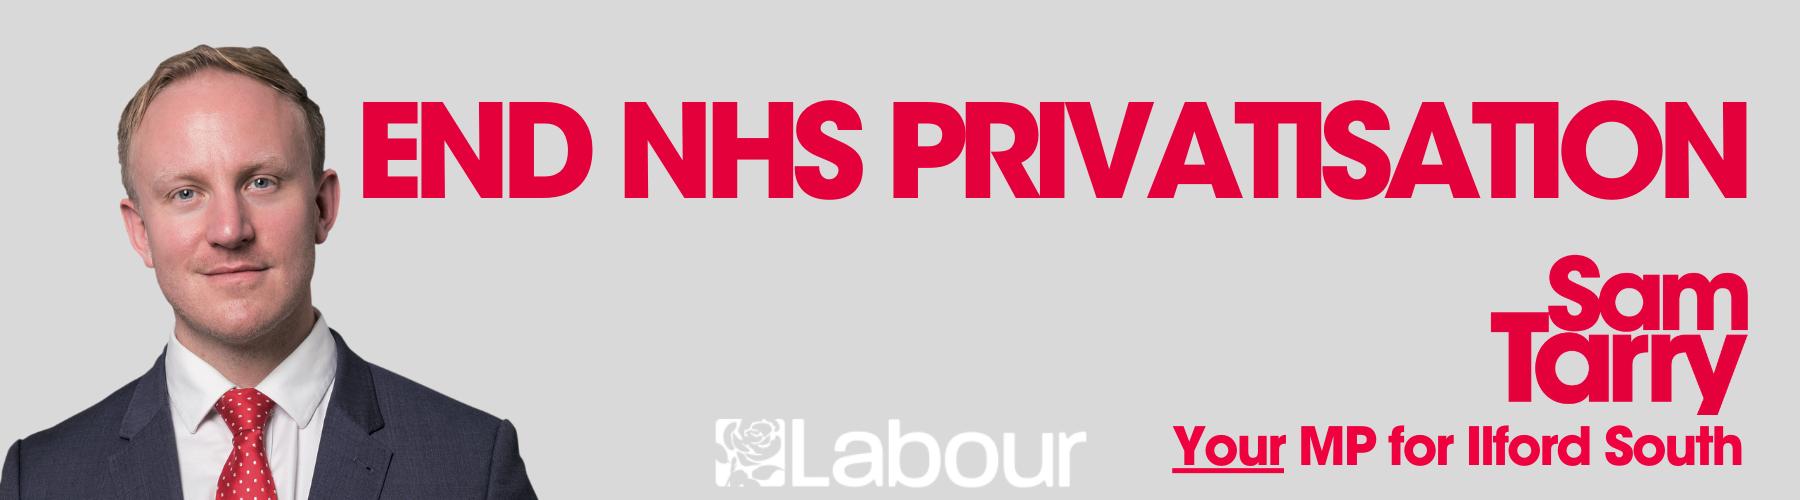 End NHS privatisation banner